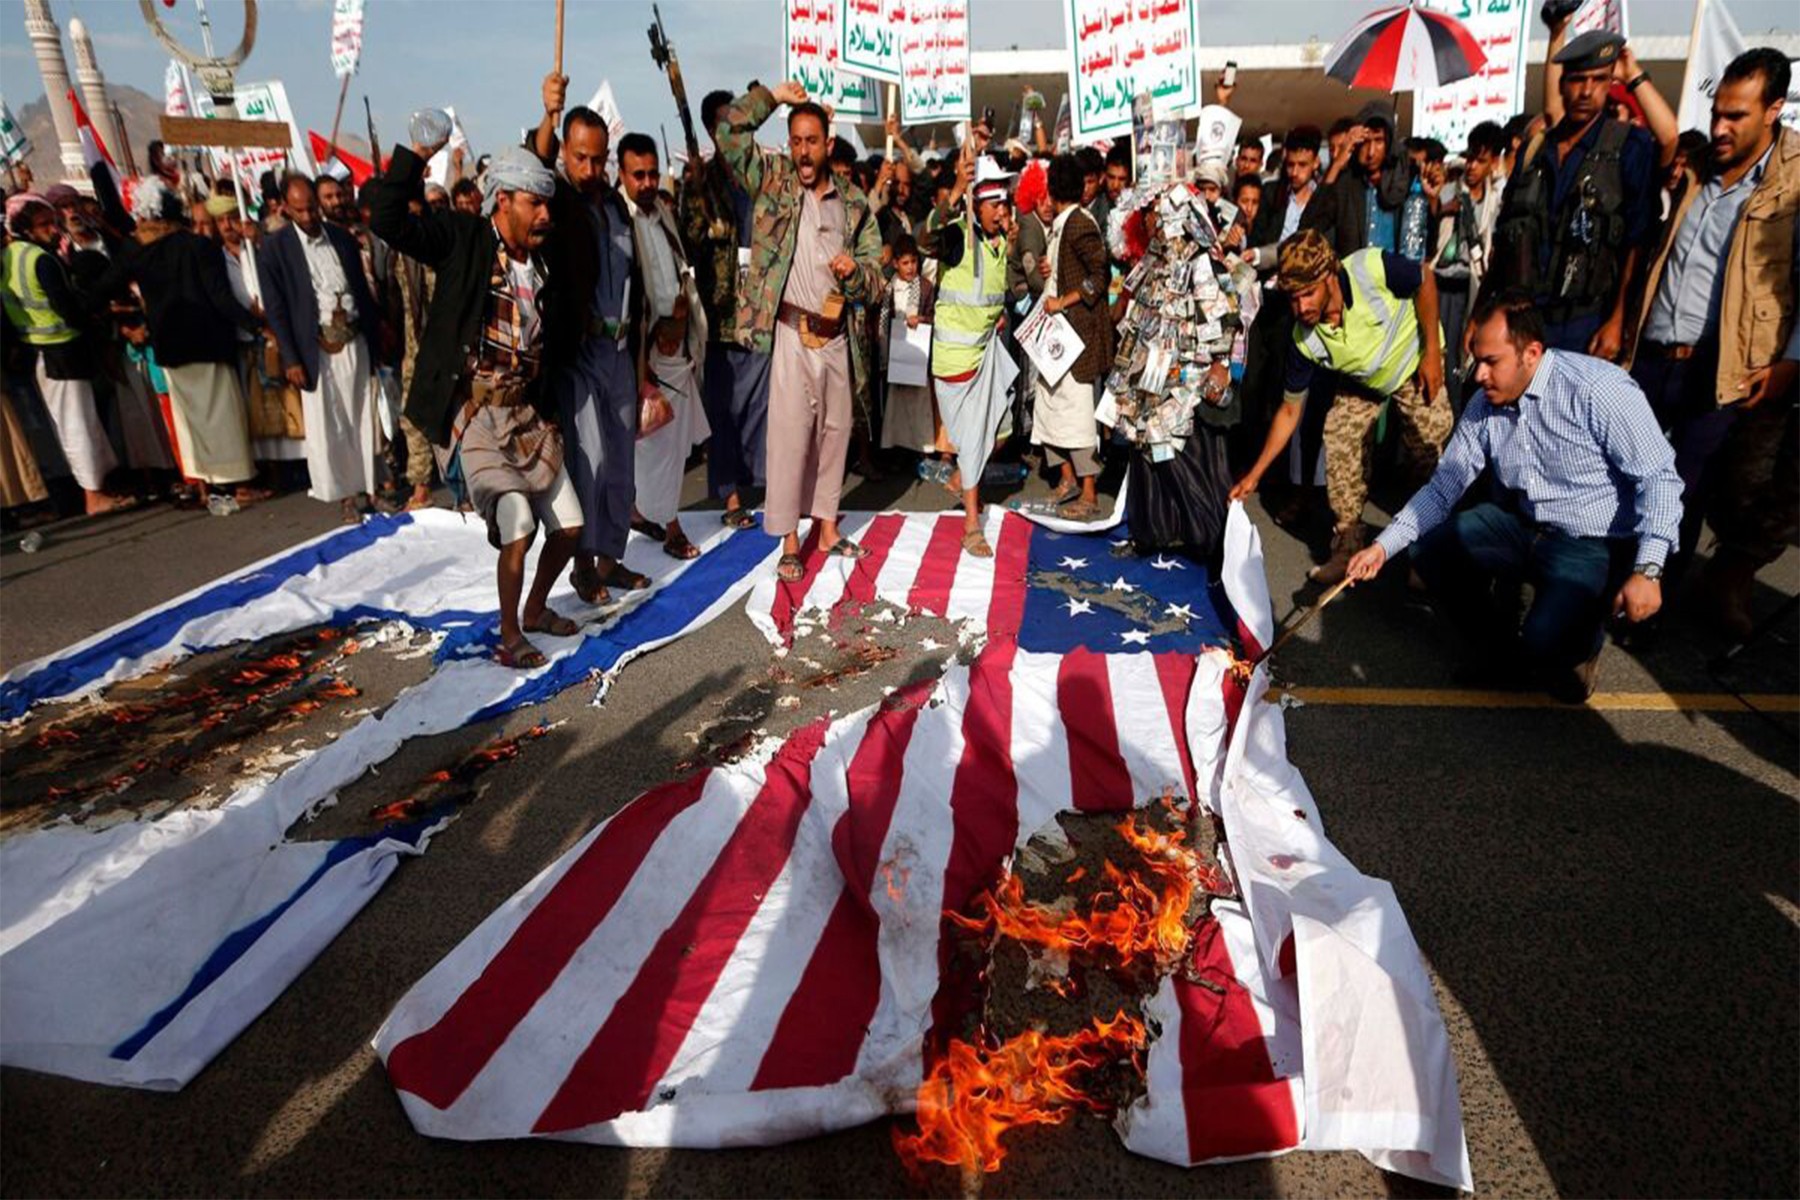 ایالات متحده حوثی ها را به عنوان یک گروه تروریستی دوباره معرفی می کند